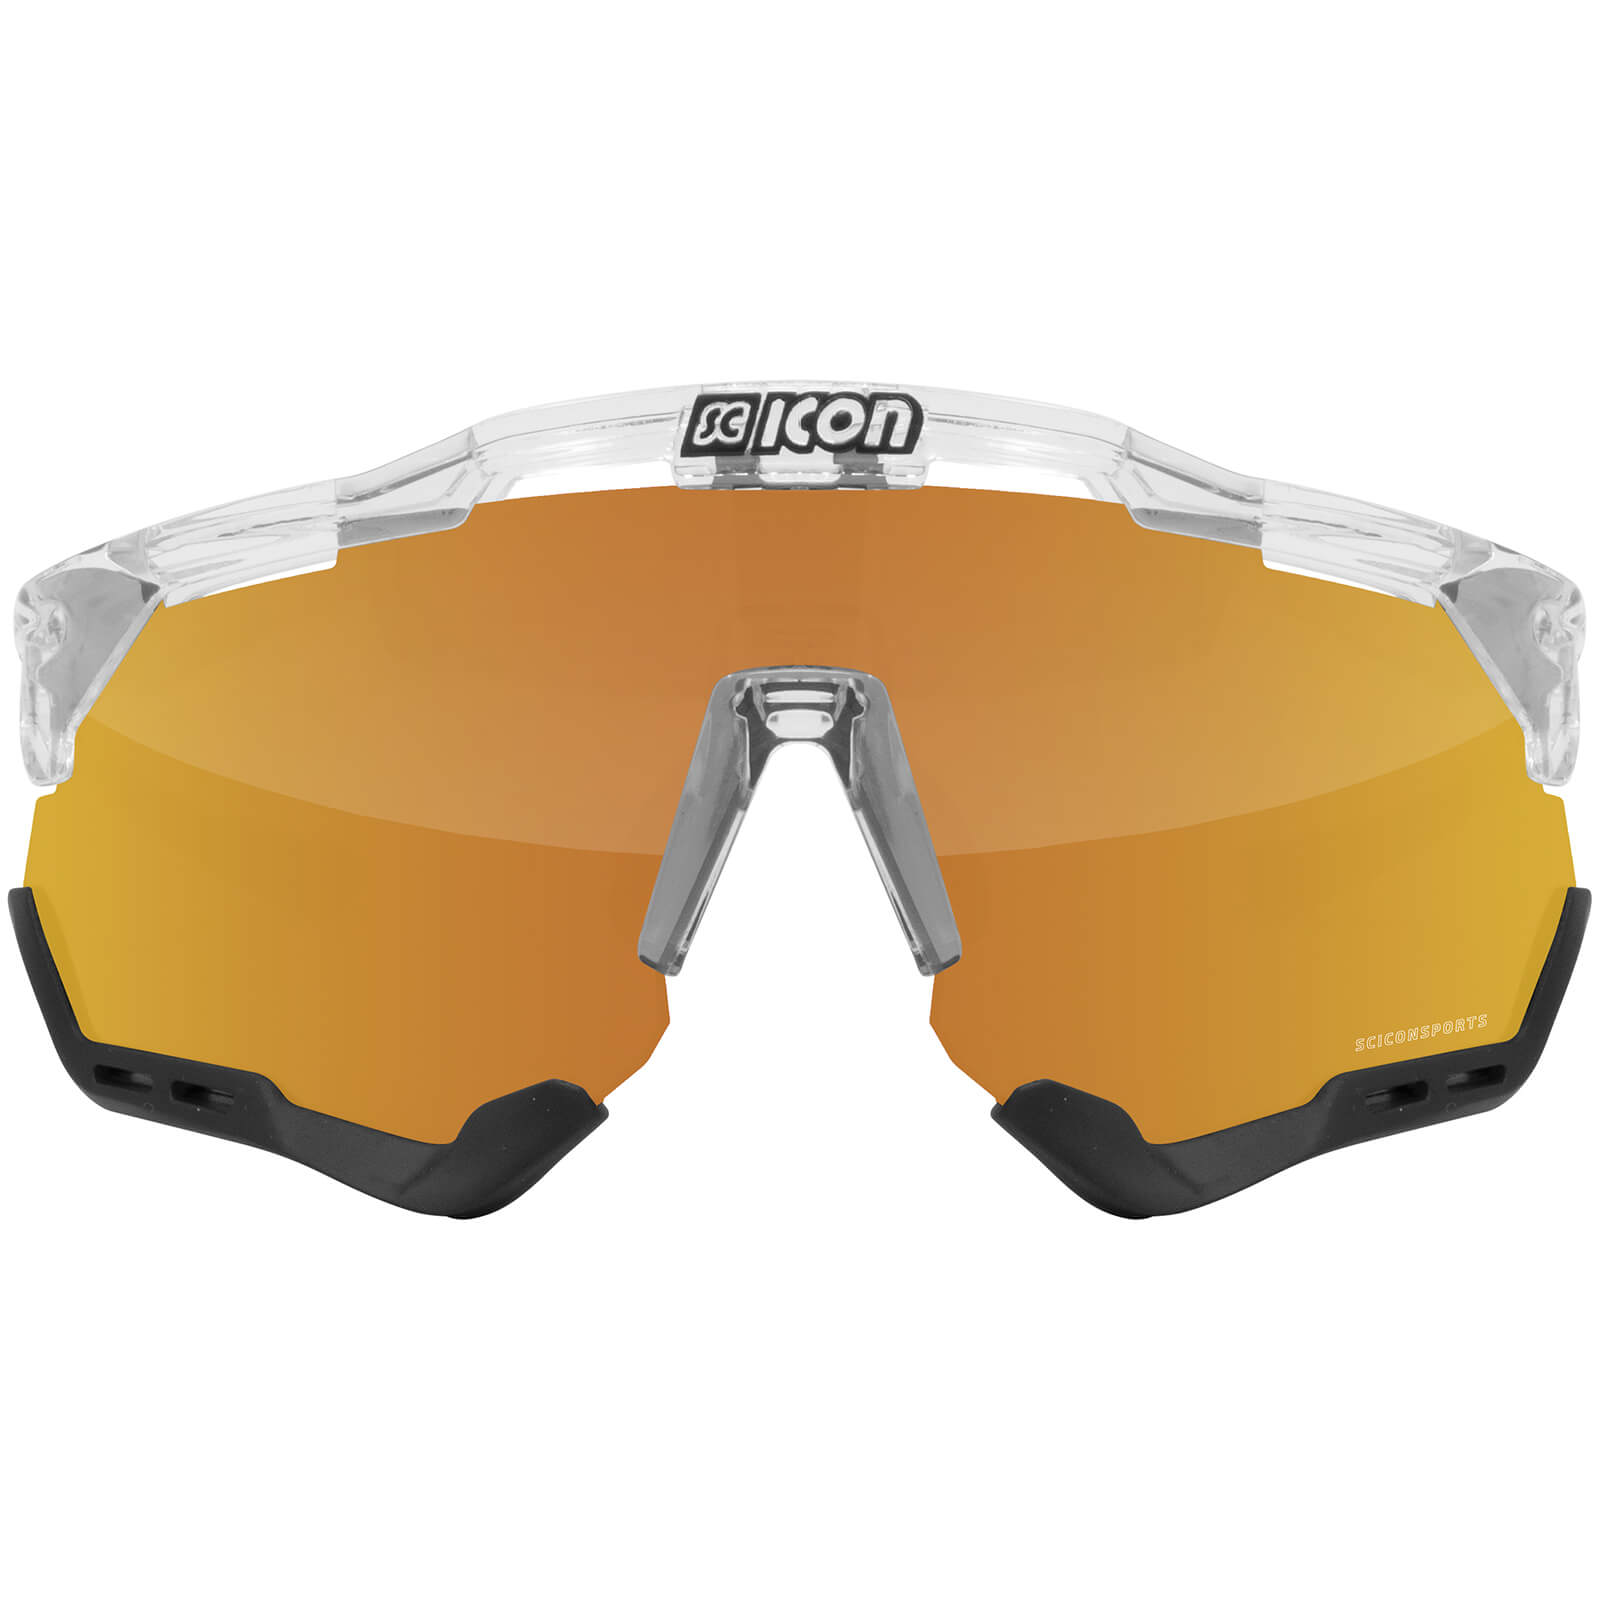 Scicon Aeroshade Road Sunglasses - Crystal Gloss - Multimirror Bronze